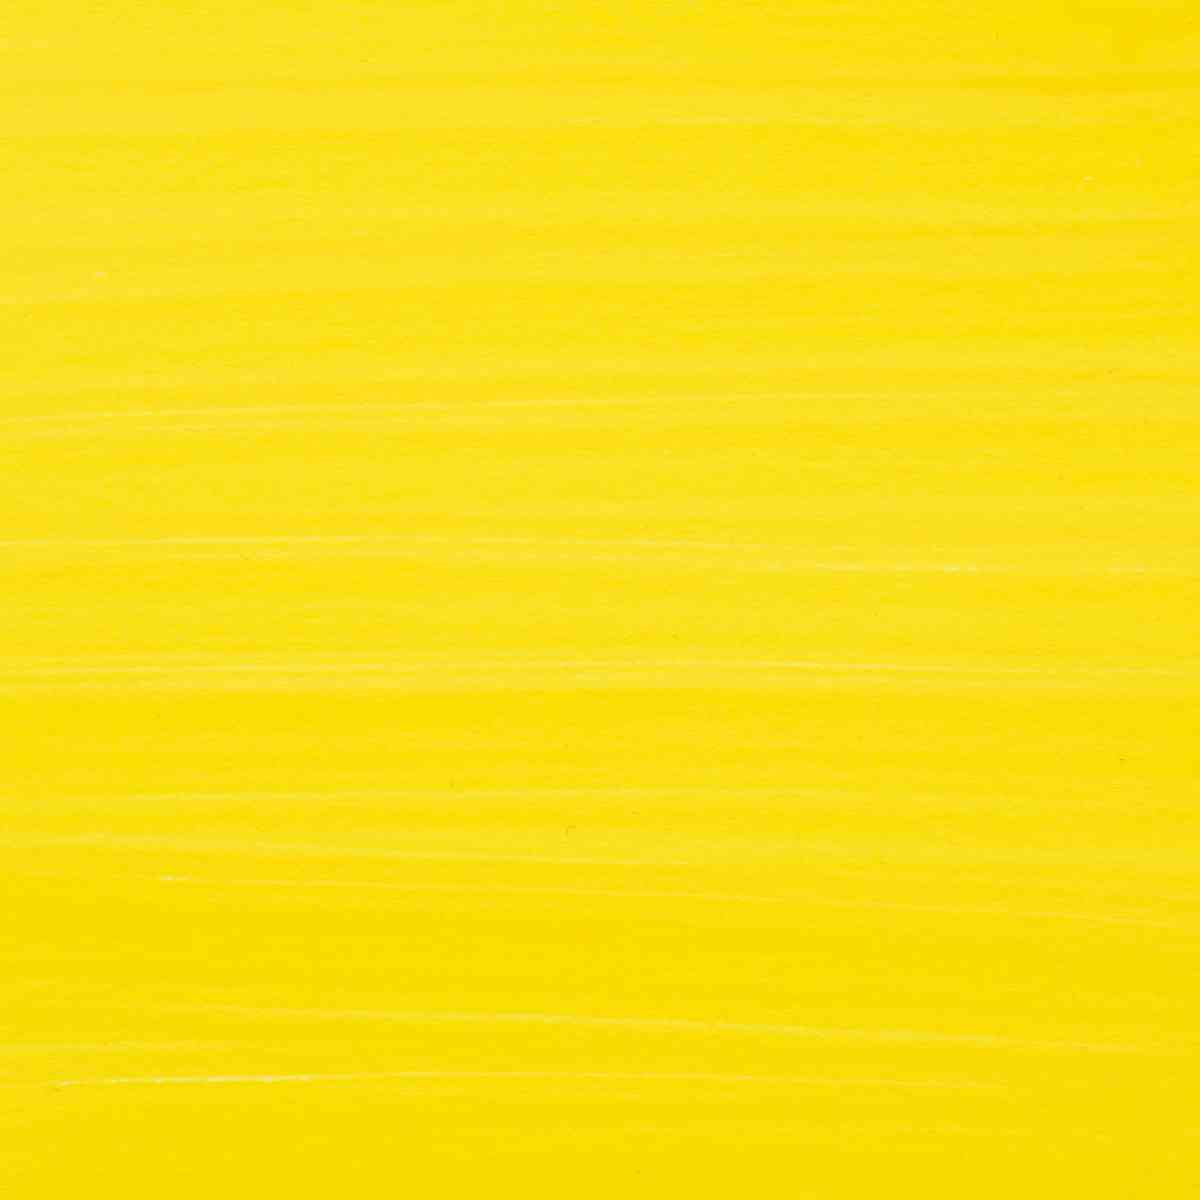 Primary yellow